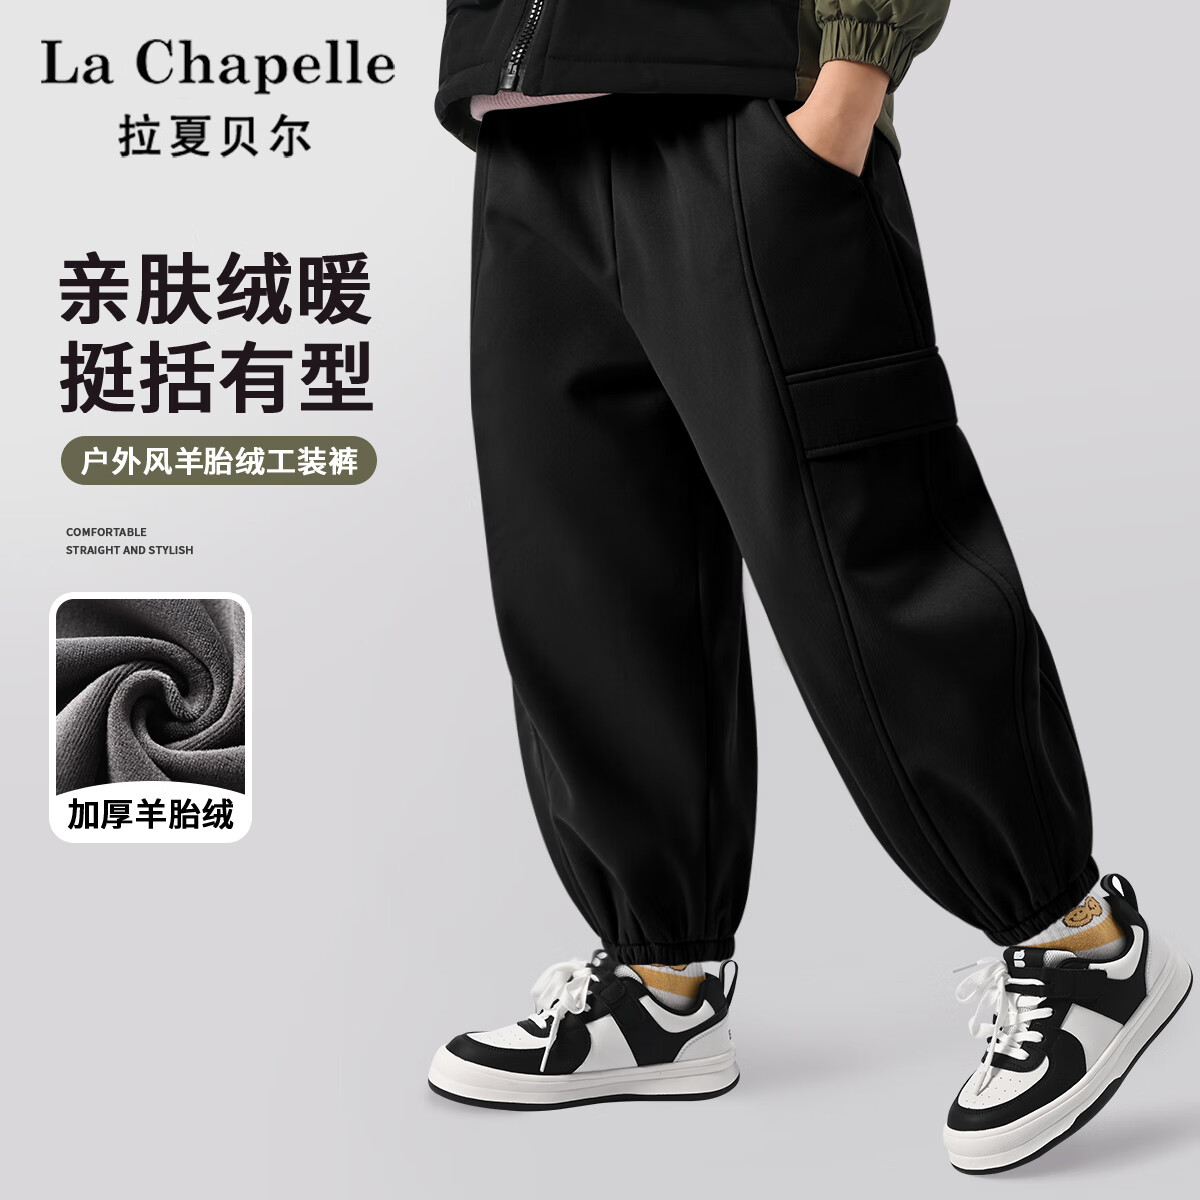 La Chapelle 儿童加绒工装裤 29.8元